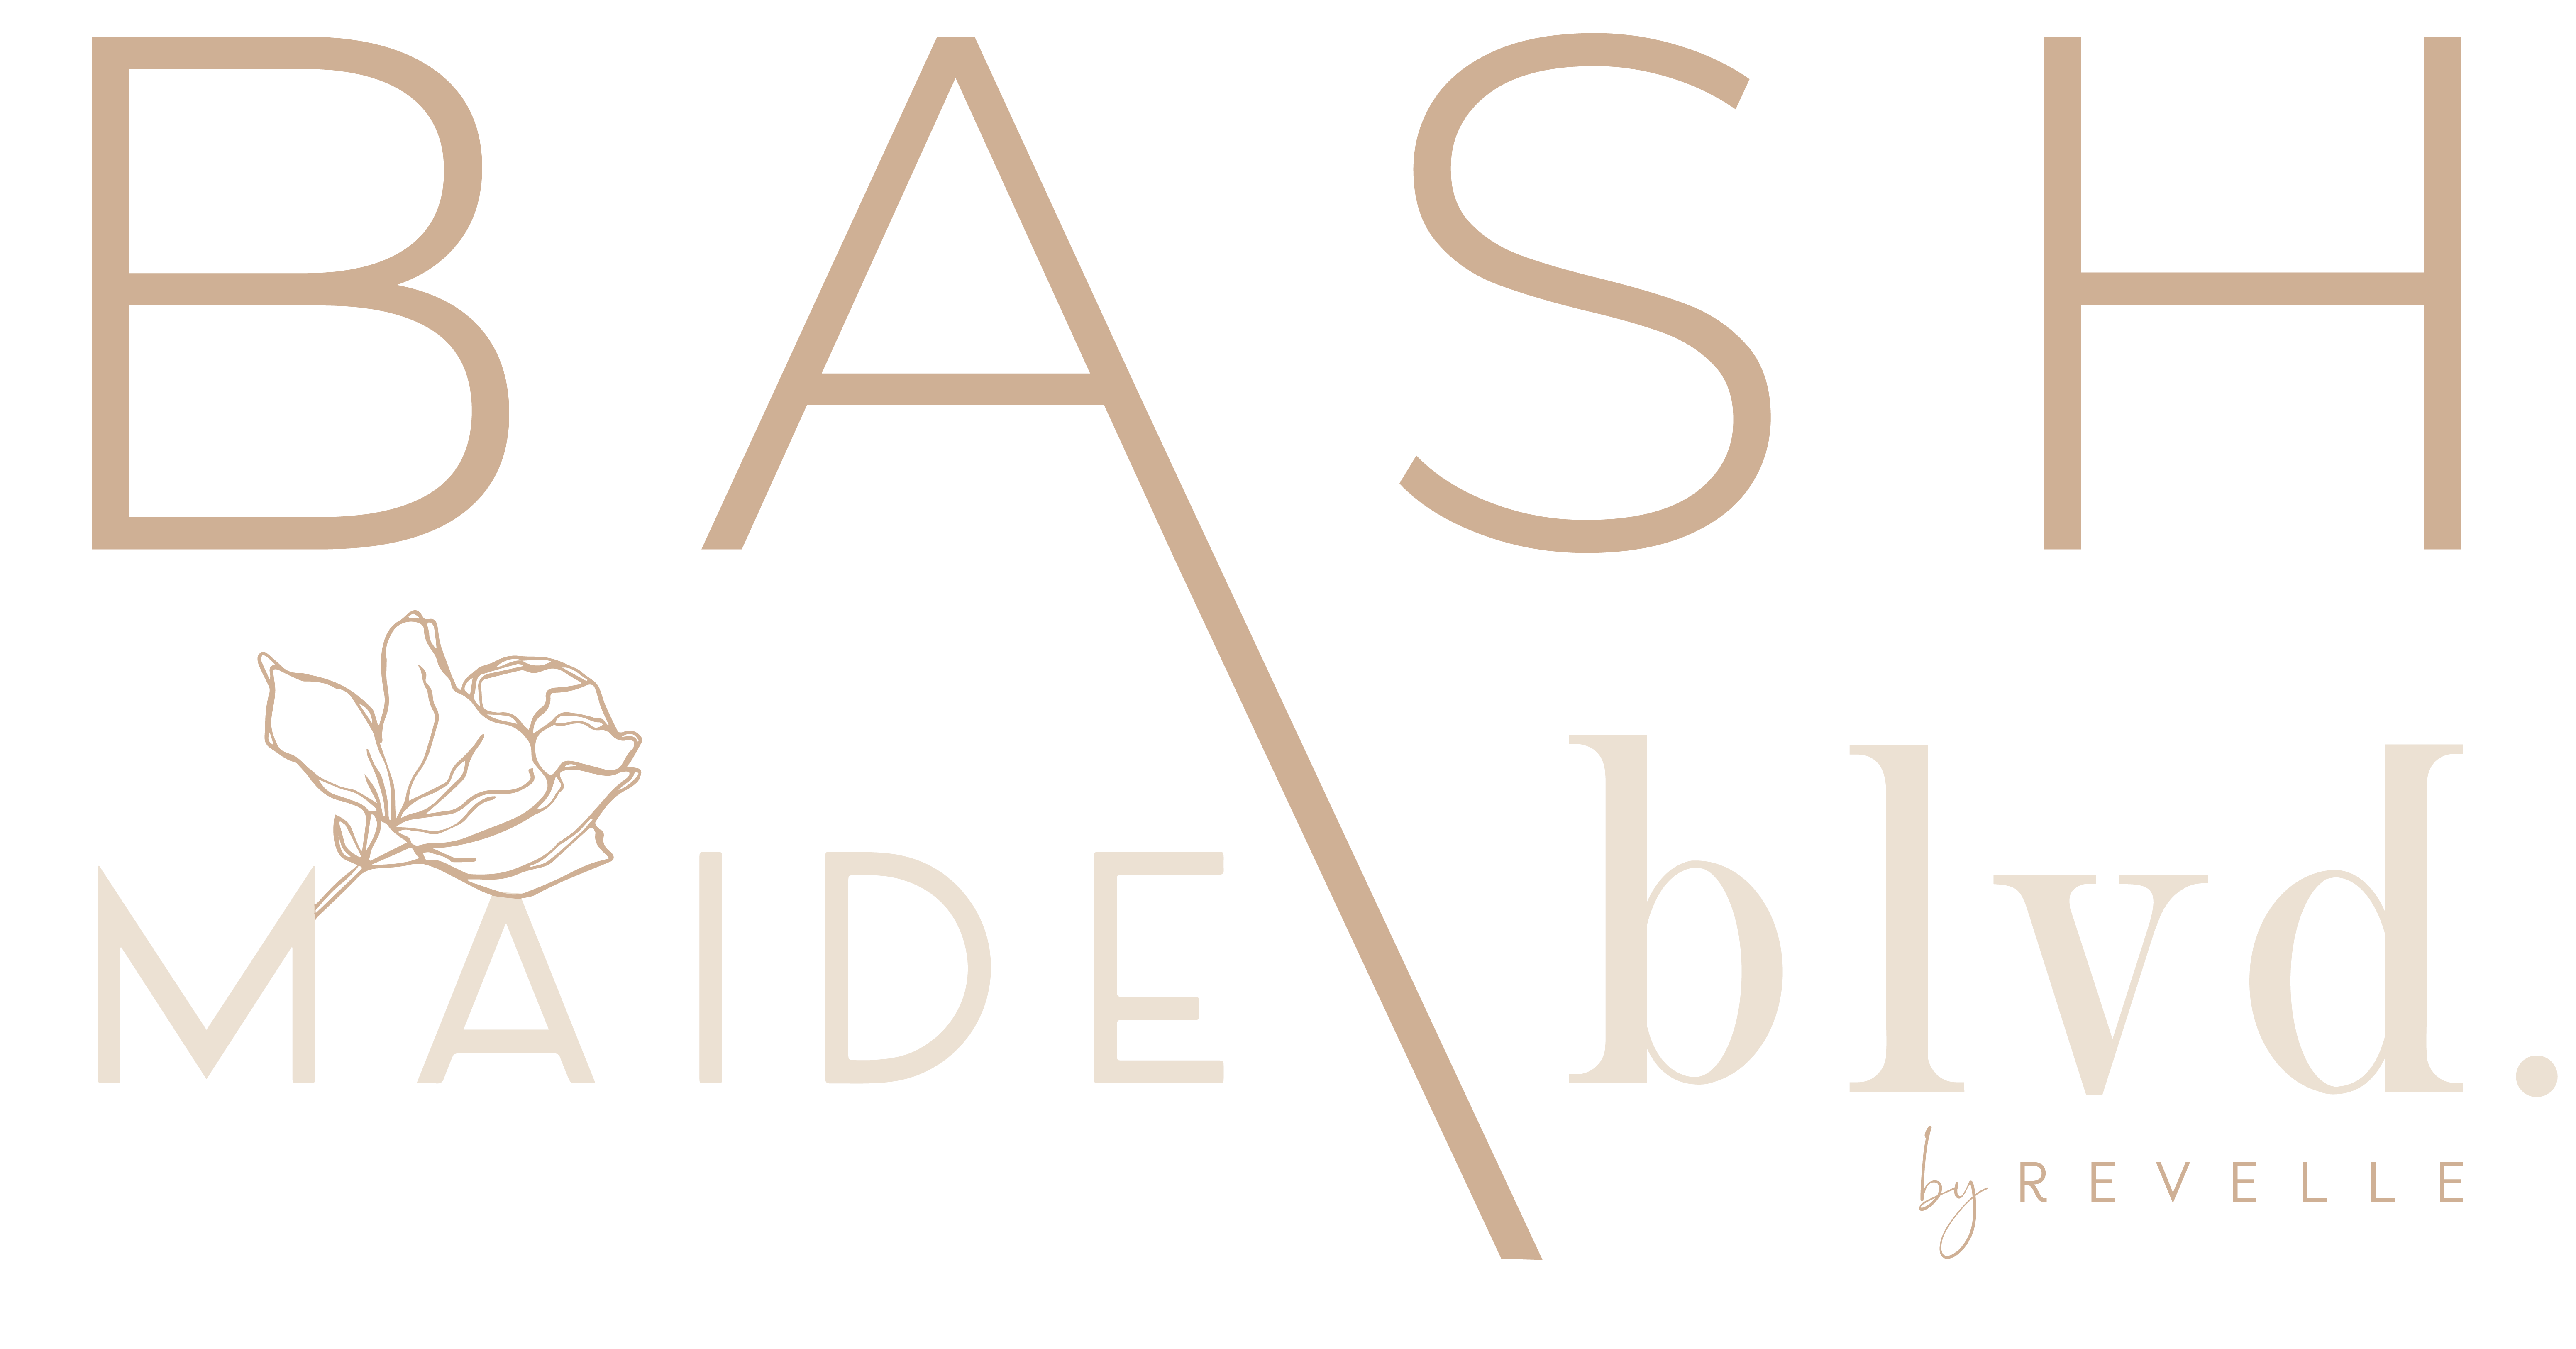 BASH-Revelle-BLVD-MAIDE-Logo